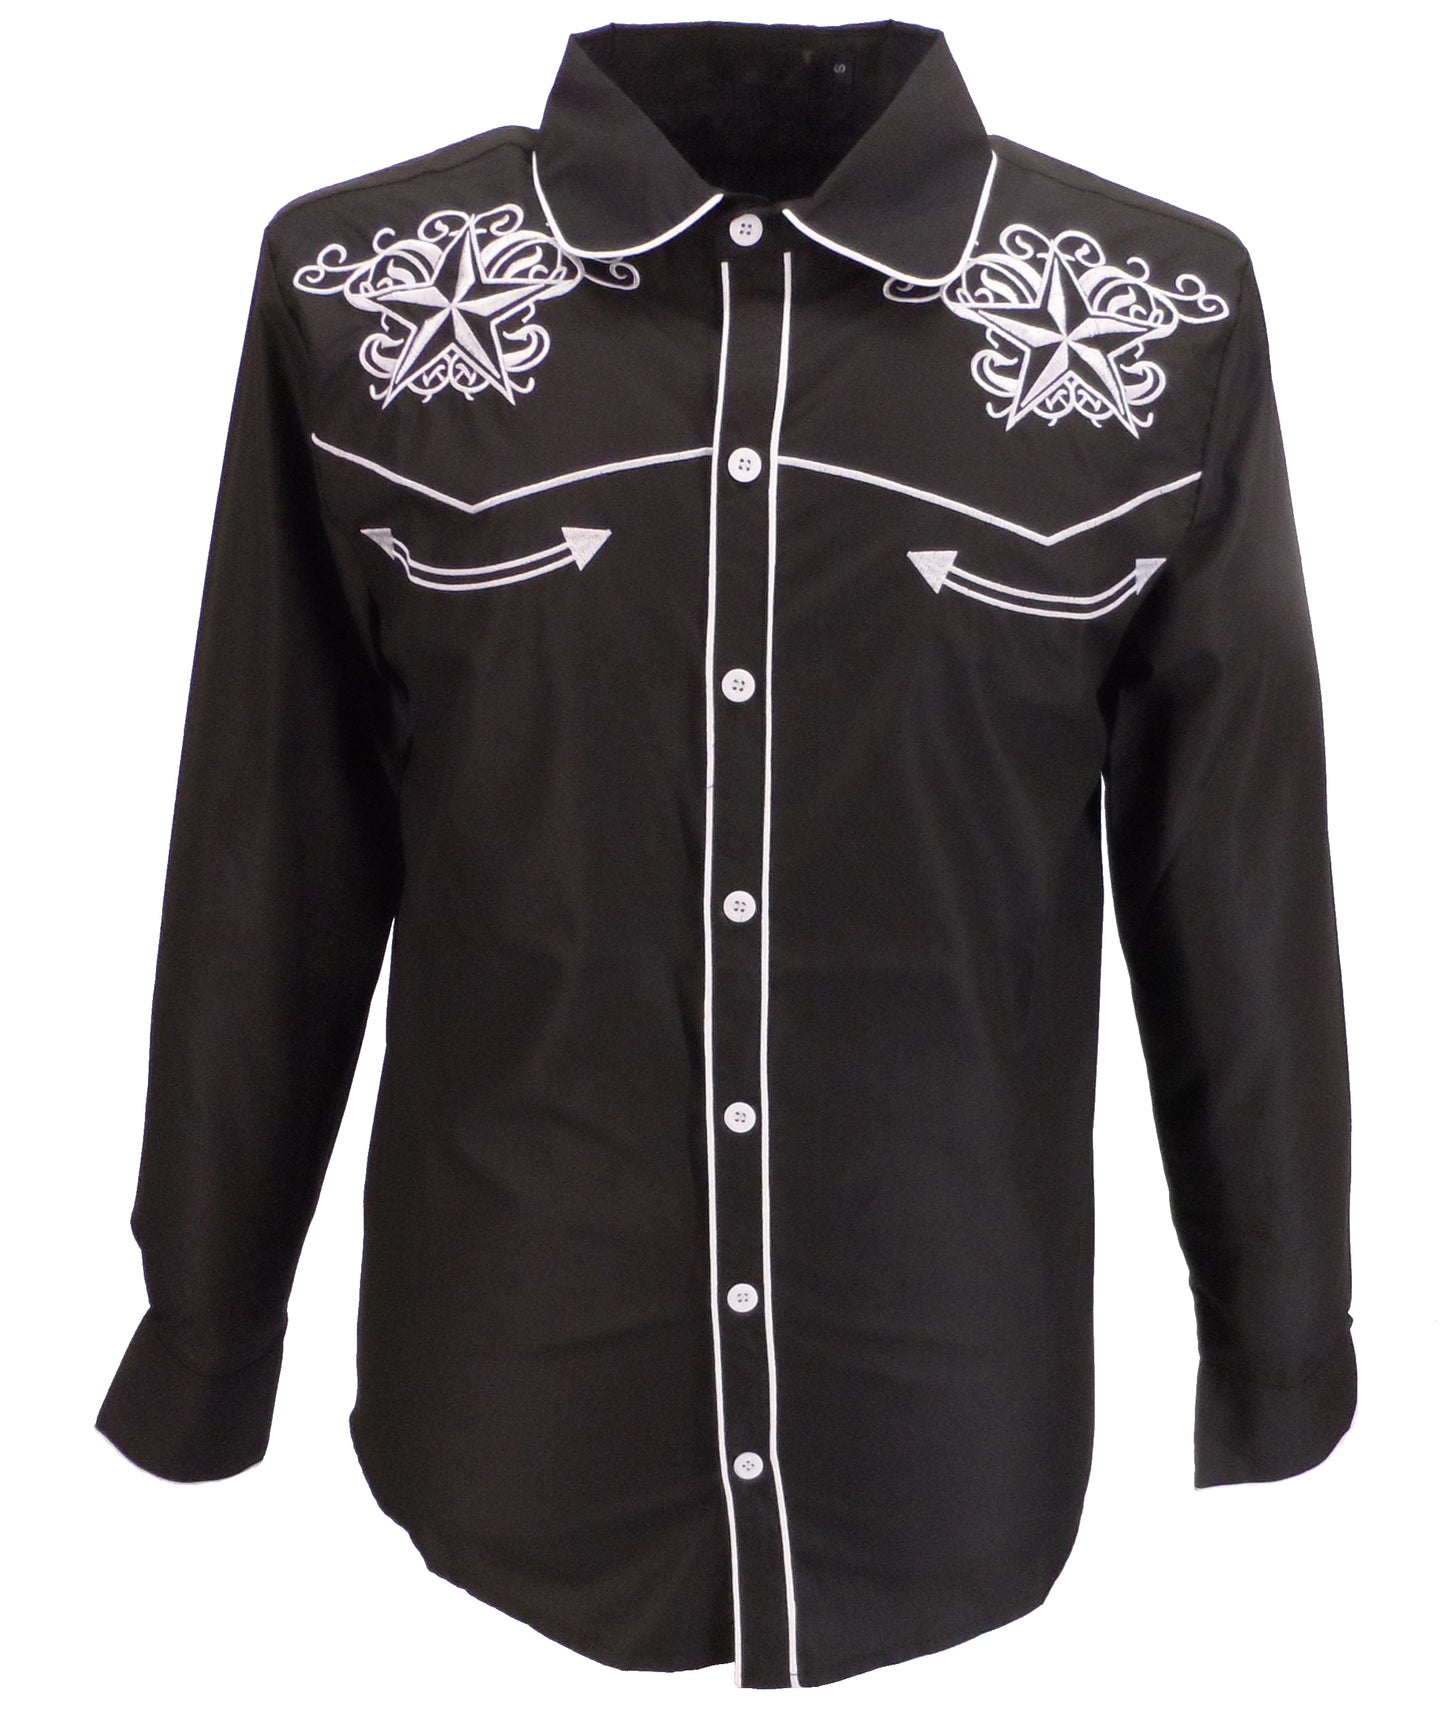 Mazeys schwarze Western-Star-Cowboy-Vintage-/Retro-Hemden für Herren